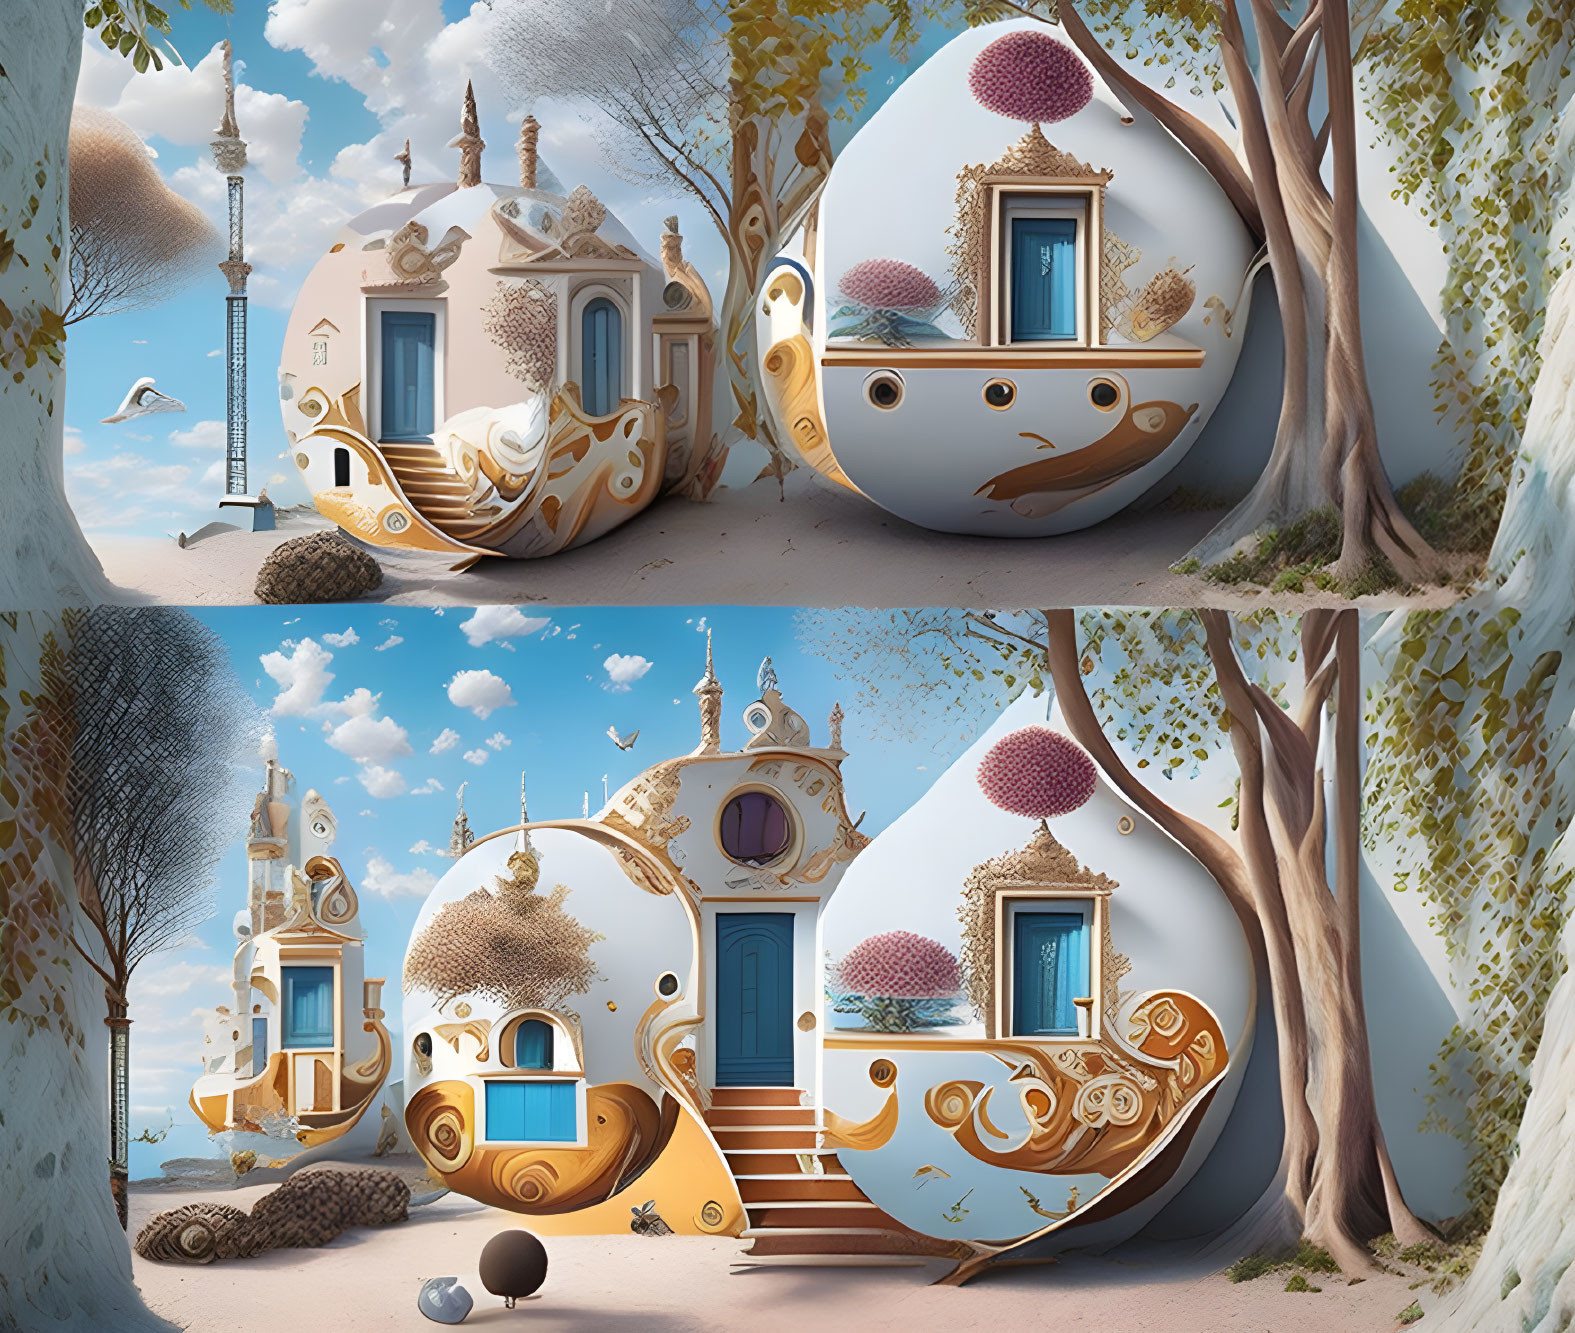 Ornate Egg-Shaped Houses in Surreal Landscape